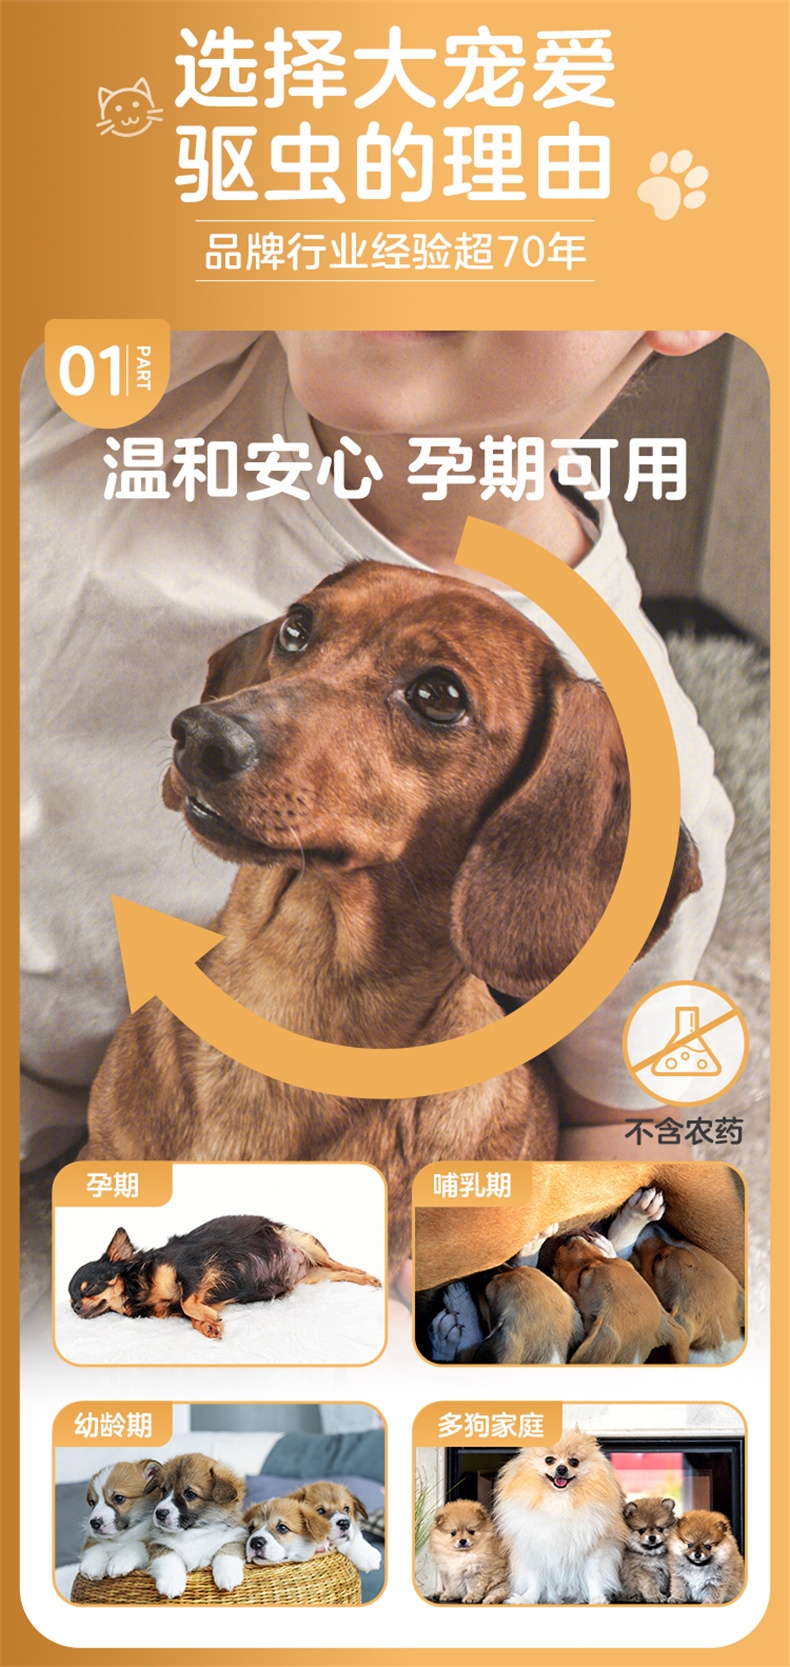 大宠爱 狗用内外同驱 驱虫滴剂 小型犬2.6-5kg适用  30mg*3支盒装/3个月剂量  美国进口